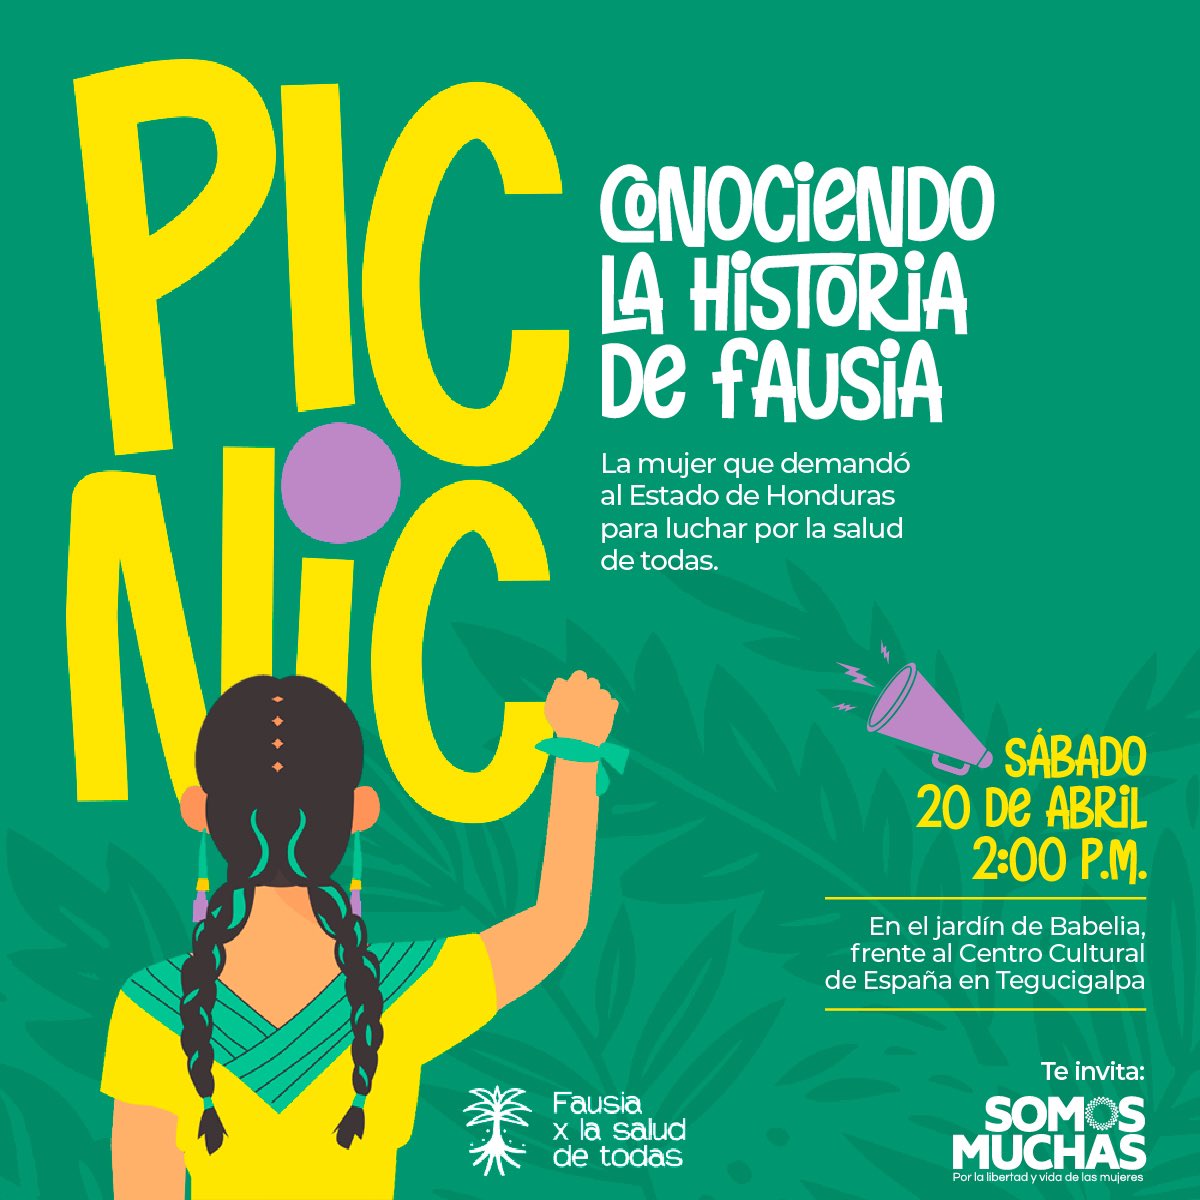 📣 Este sábado 20 de abril, acompañanos a conocer la historia de Fausia y la lucha por la salud de todas, toditas las mujeres hondureñas. Traé tus galletas, frutita y cualquier otra cosa para compartir en este espacio pensado para nosotras. 🧺 🌿🇭🇳💚 #FausiaXLaSaludDeTodas